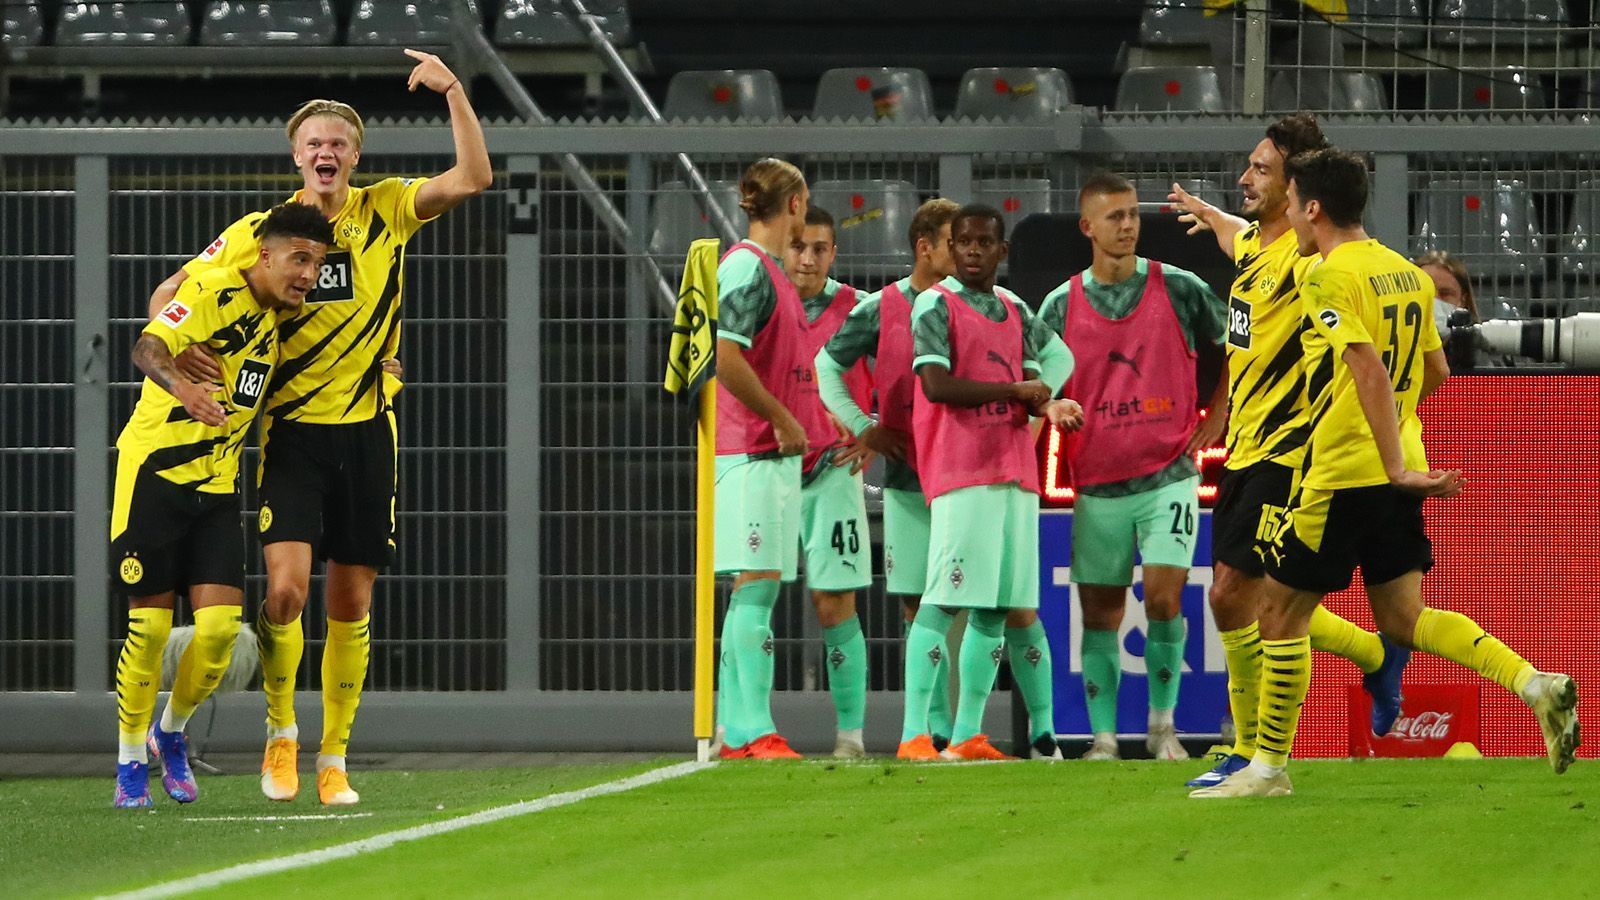 
                <strong>Gewinner: Borussia Dortmund</strong><br>
                Ein Auftakt nach Maß gelang auch dem gefährlichsten Bayern-Jäger. Der 3:0-Sieg gegen Borussia Mönchengladbach war zu keinem Zeitpunkt gefährdet. Besonders erfrischend waren dabei die jungen Wilden in den Reihen des BVB, deren Vorwärtsdrang kein Ende zu nehmen schien. In der 35. Minute brachten zwei 17-Jährige die große Borussia auf die Siegerstraße, als Neuzugang Jude Bellingham Giovanni Reyna vor dem 1:0 bediente. Danach traf Erling Haaland doppelt und fertig war der lupenreine Saisonauftakt. So wird uns der BVB noch viel Spaß machen.
              